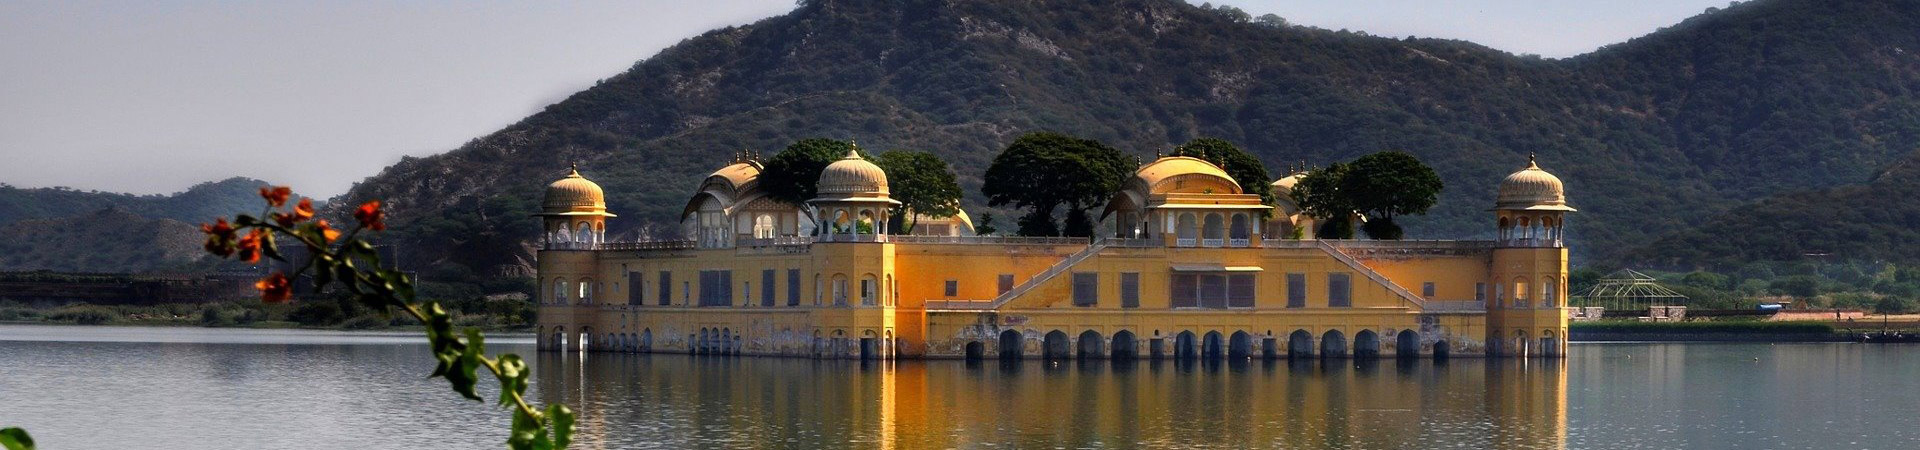 Water Palace Jal Mahal Rajasthan